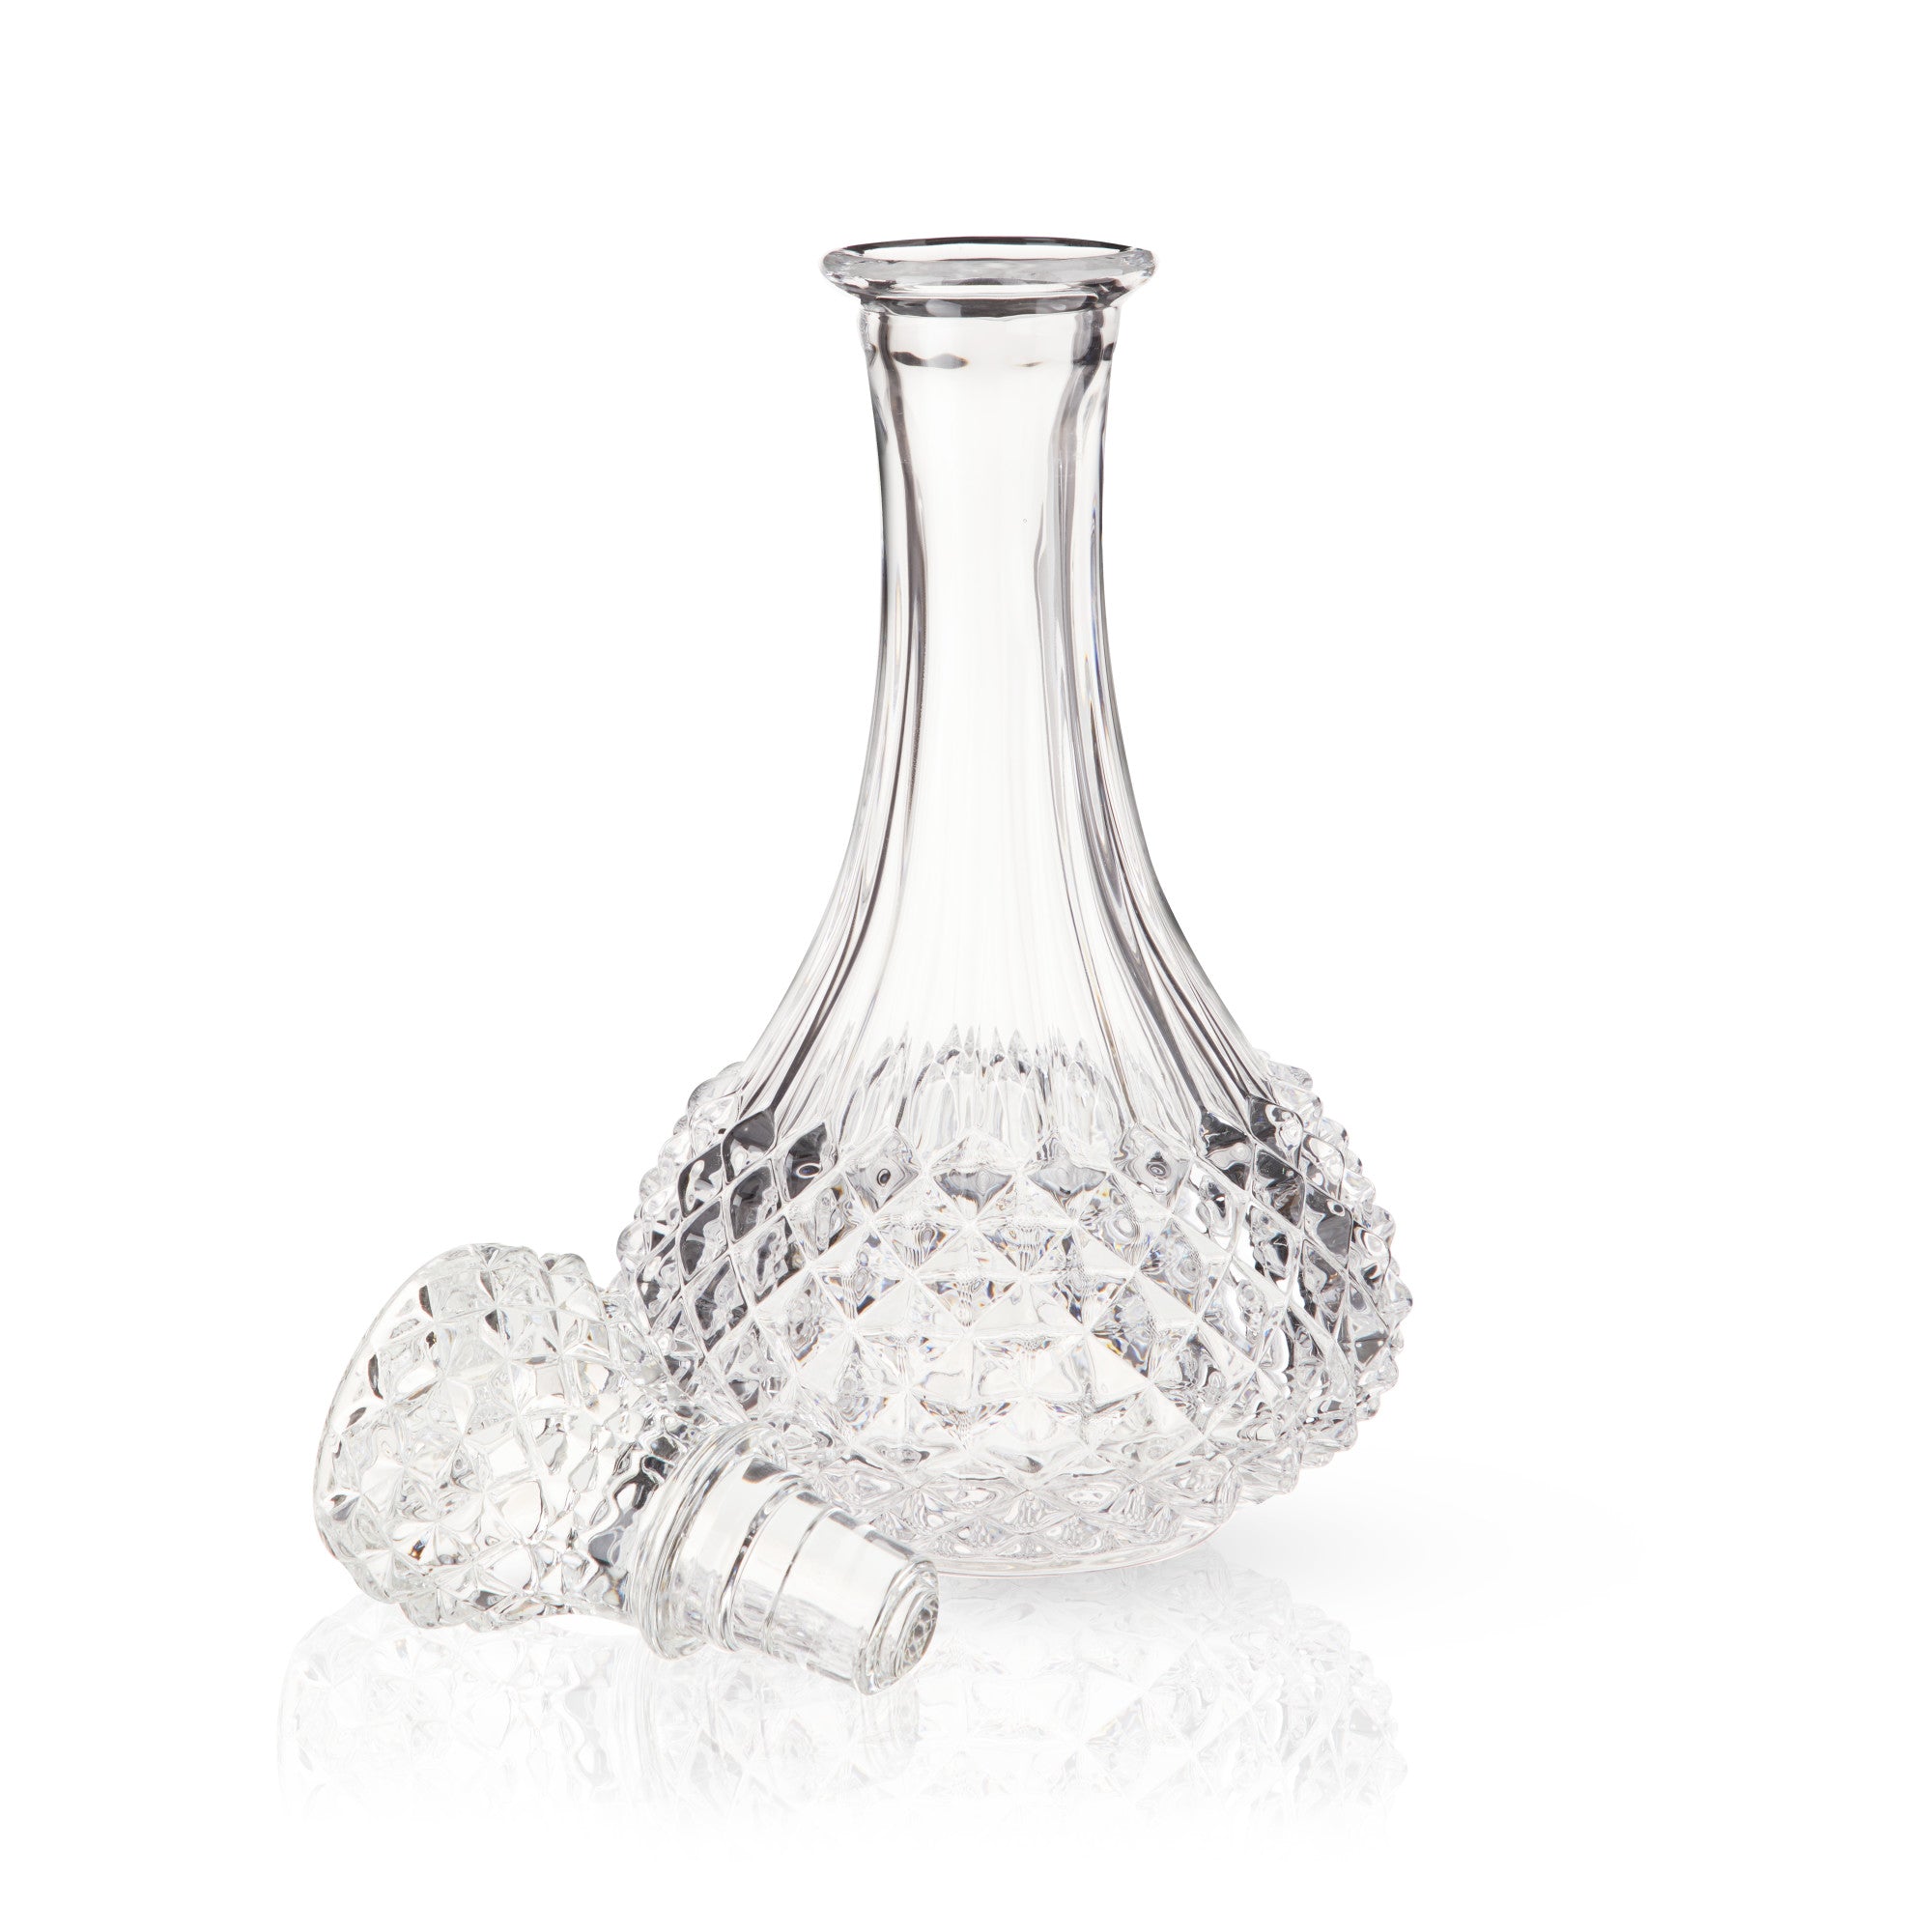 Studded Glass Decanter by Viski® (7642) Liquor Accessories Viski